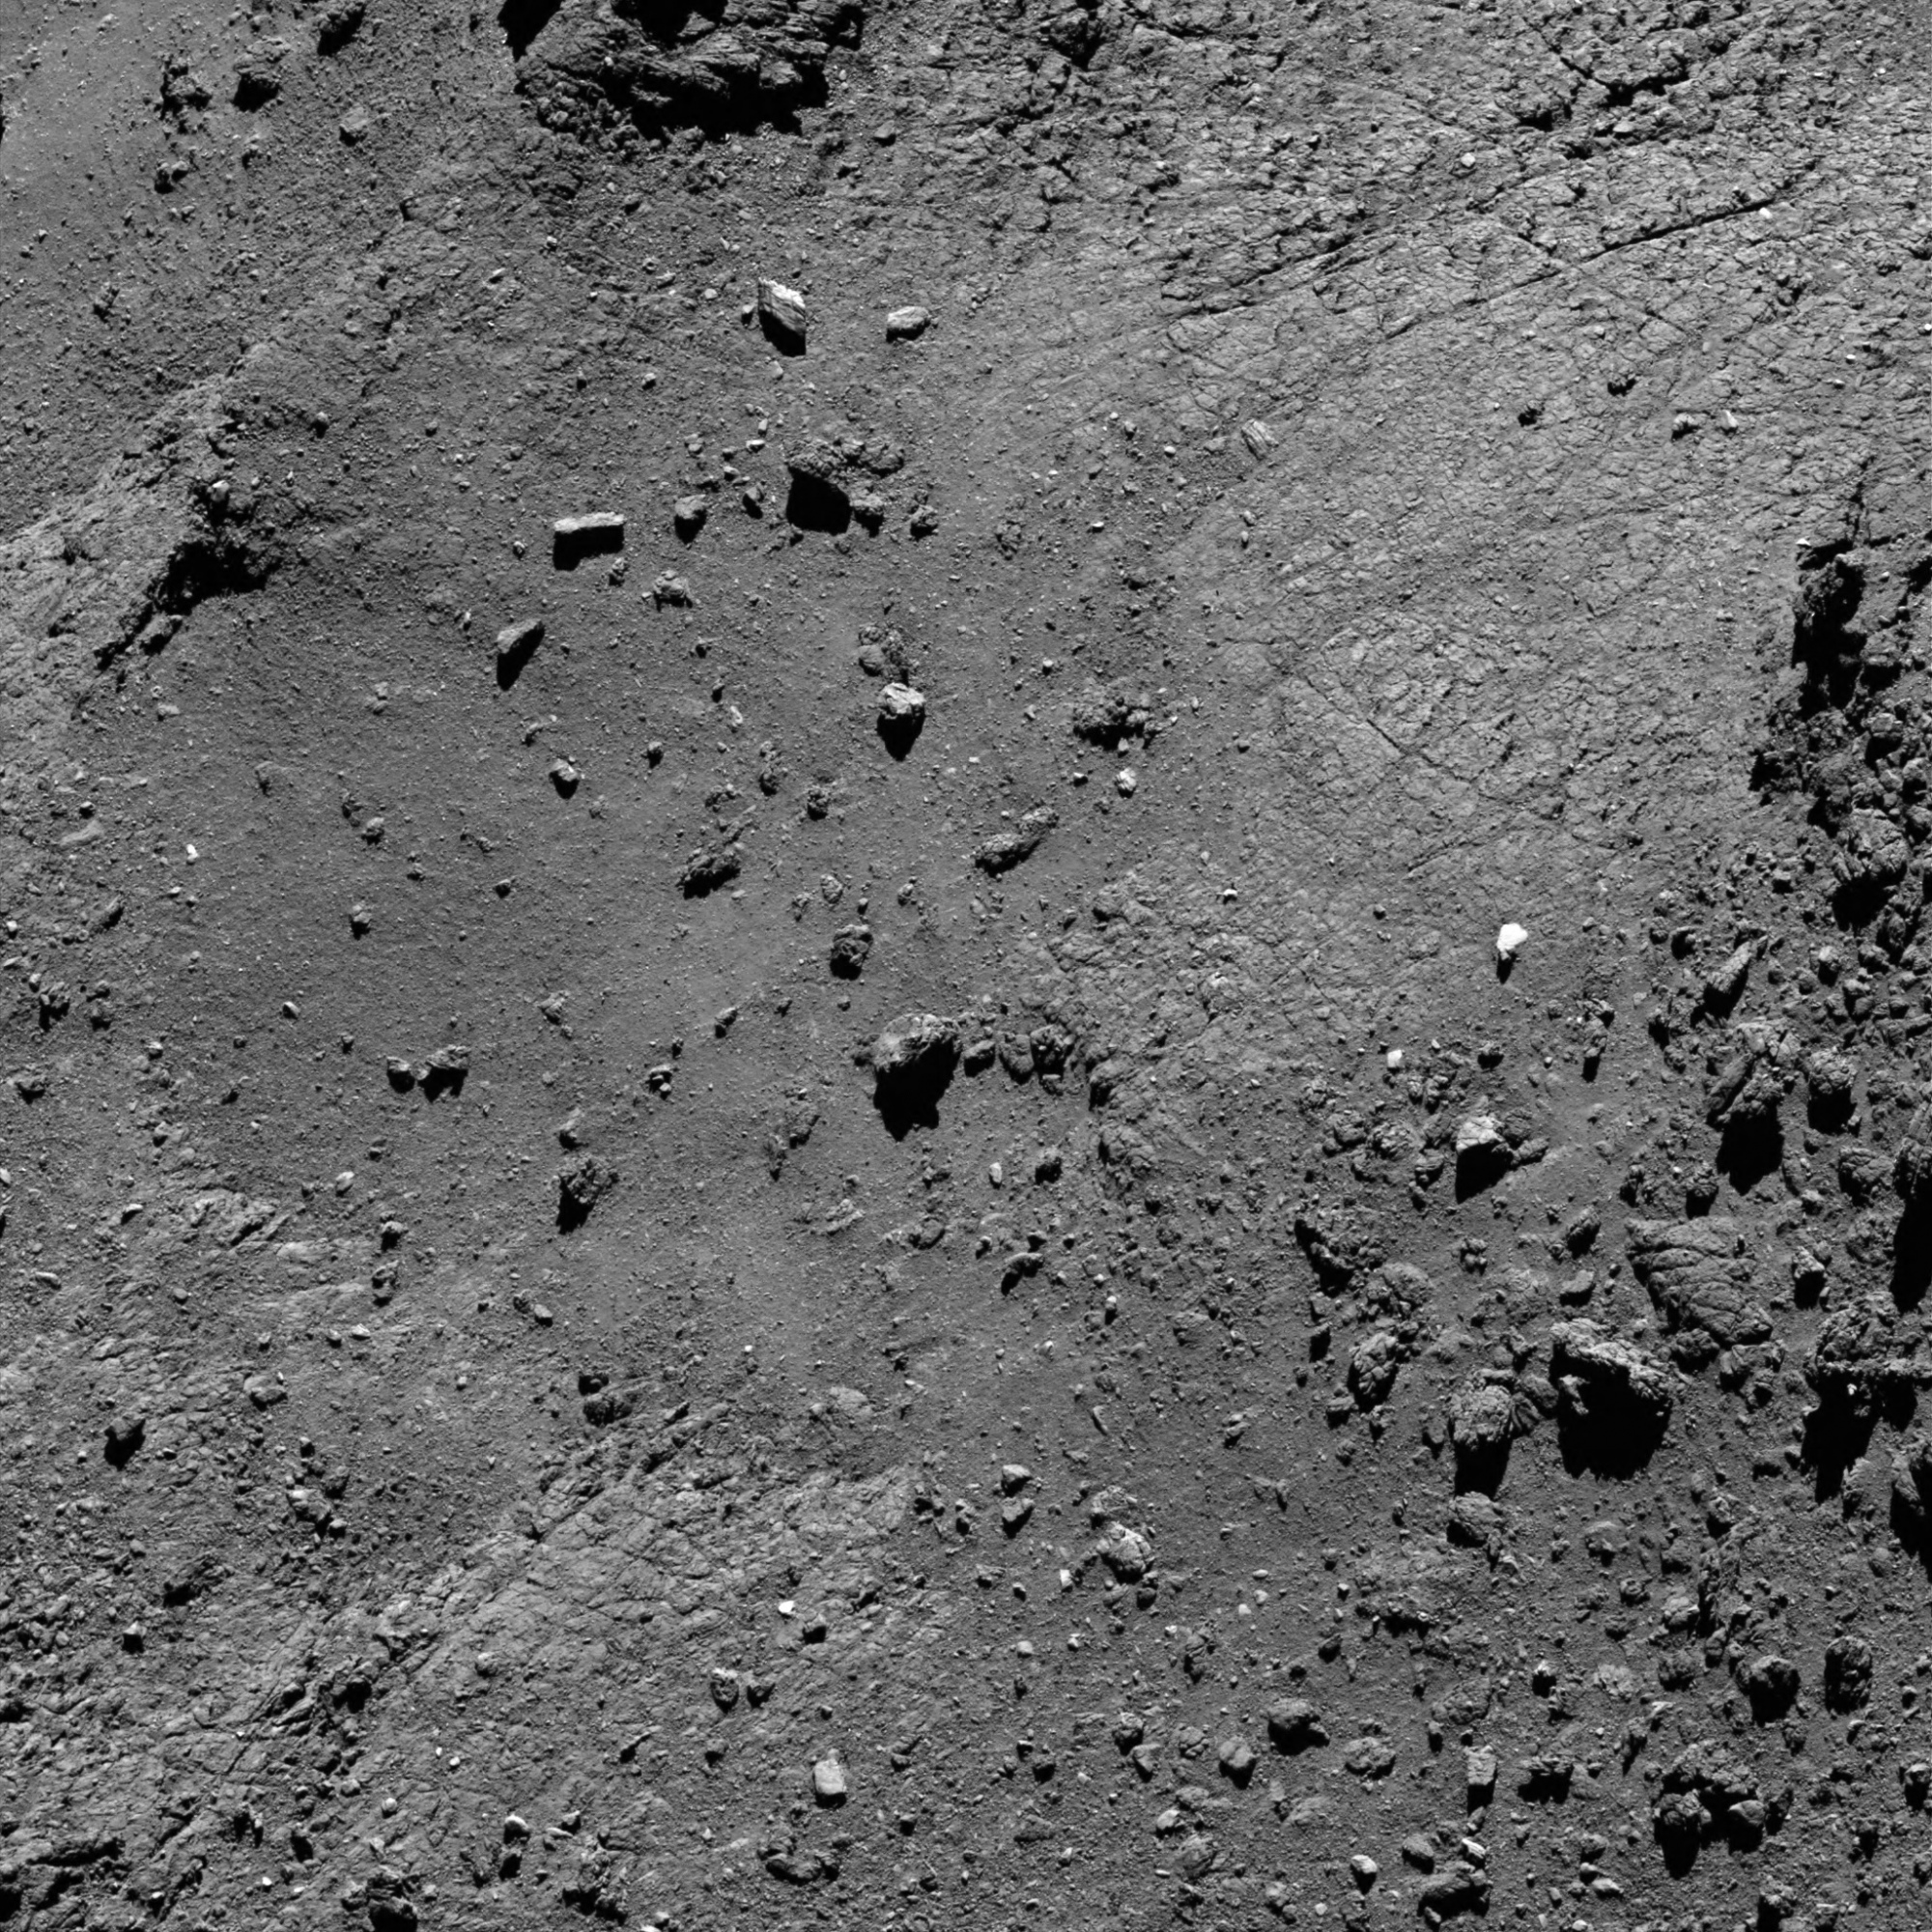 Rosetta 5 15 August 2016 from 5.5 km - JEPG.jpg